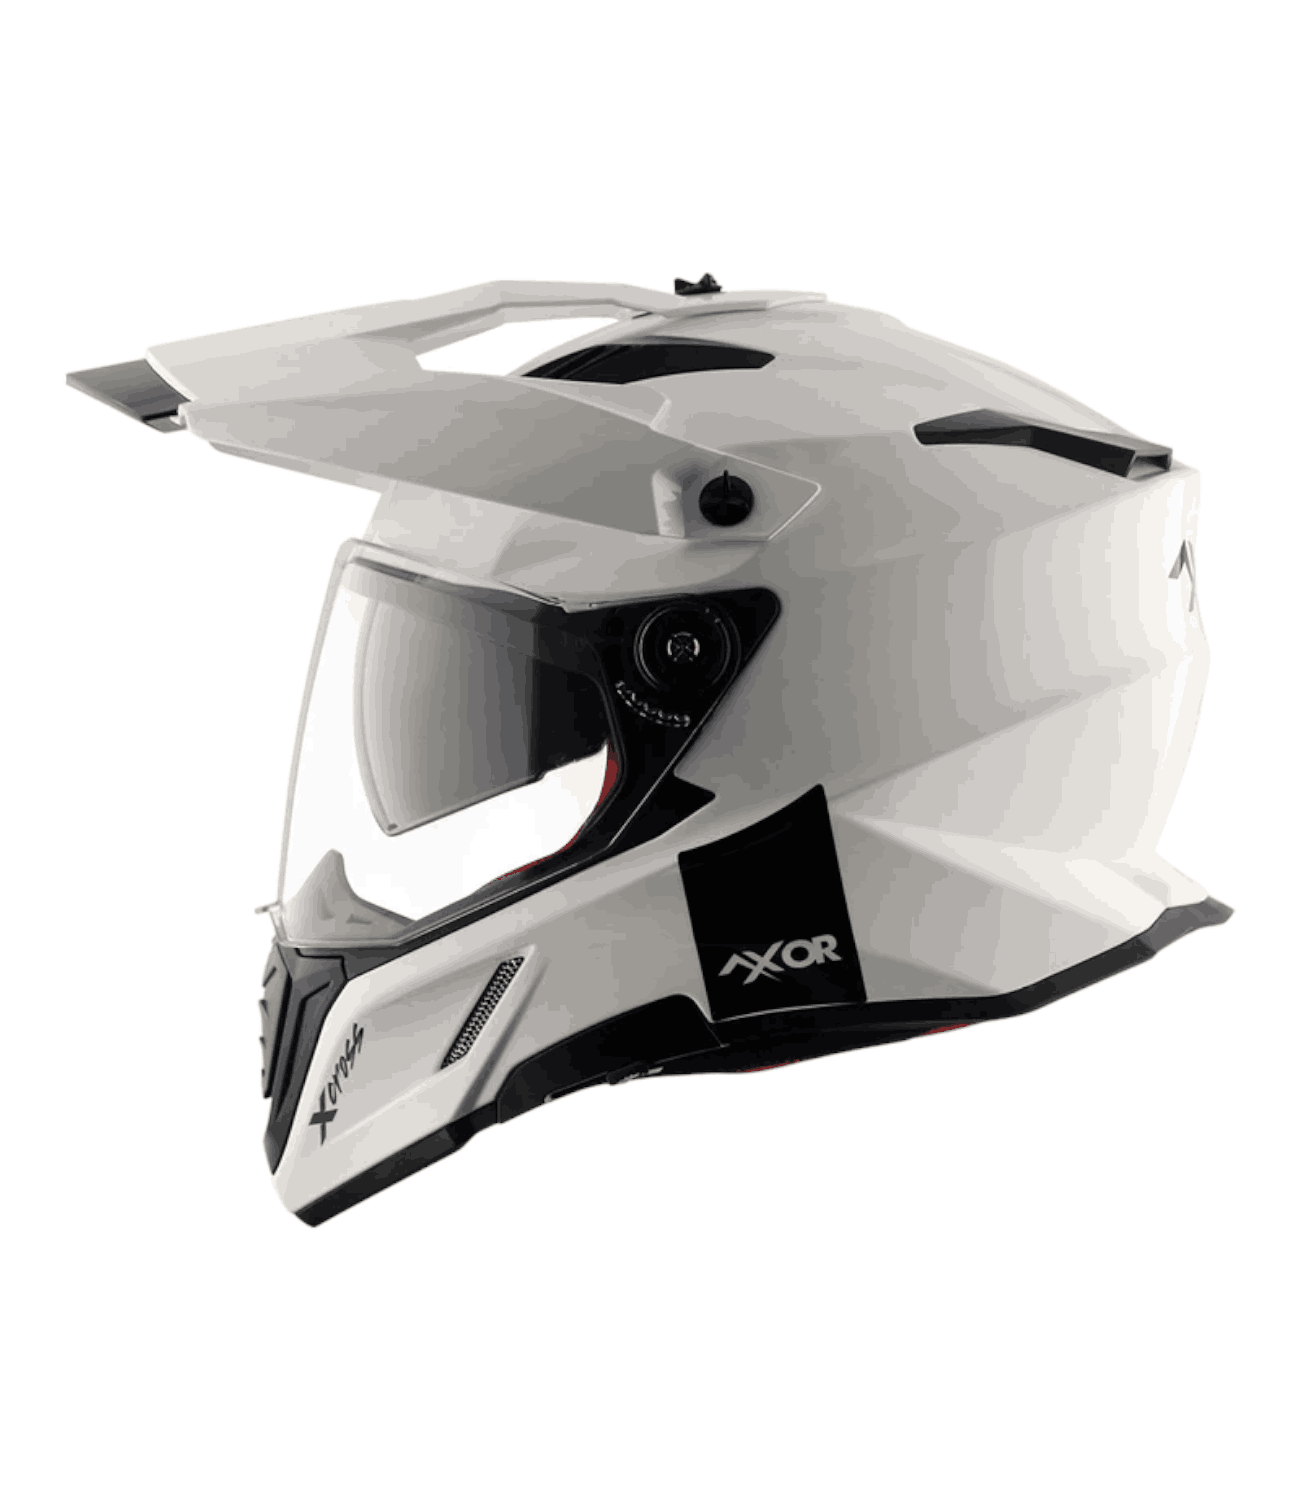 Axor X-Cross Dual Visor Helmet White